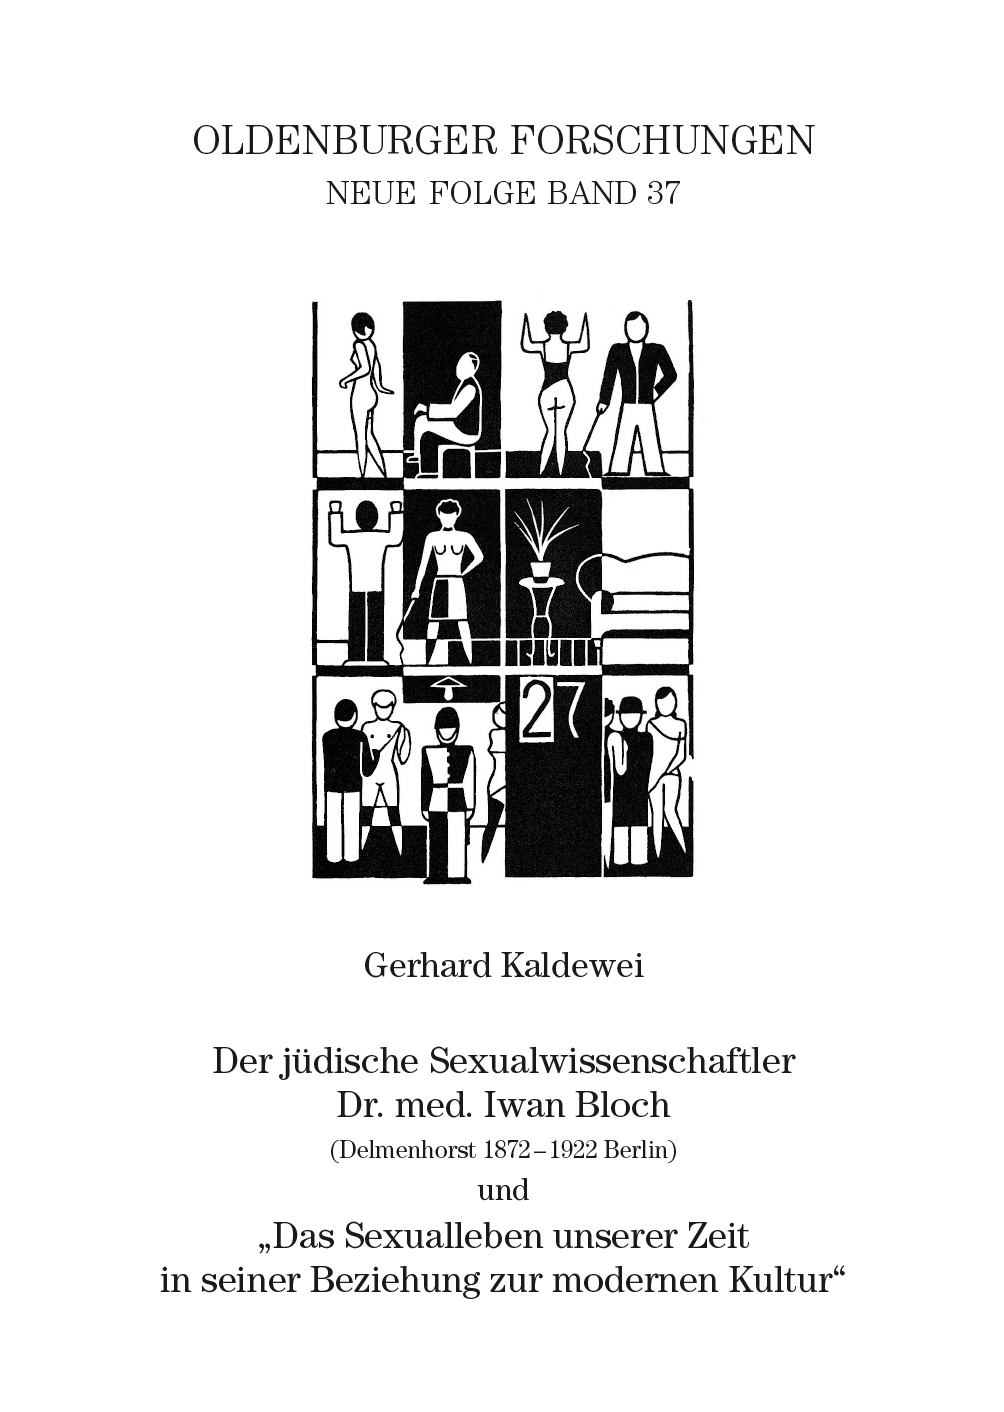 Oldenburger Forschungen Band 37 Titelbild